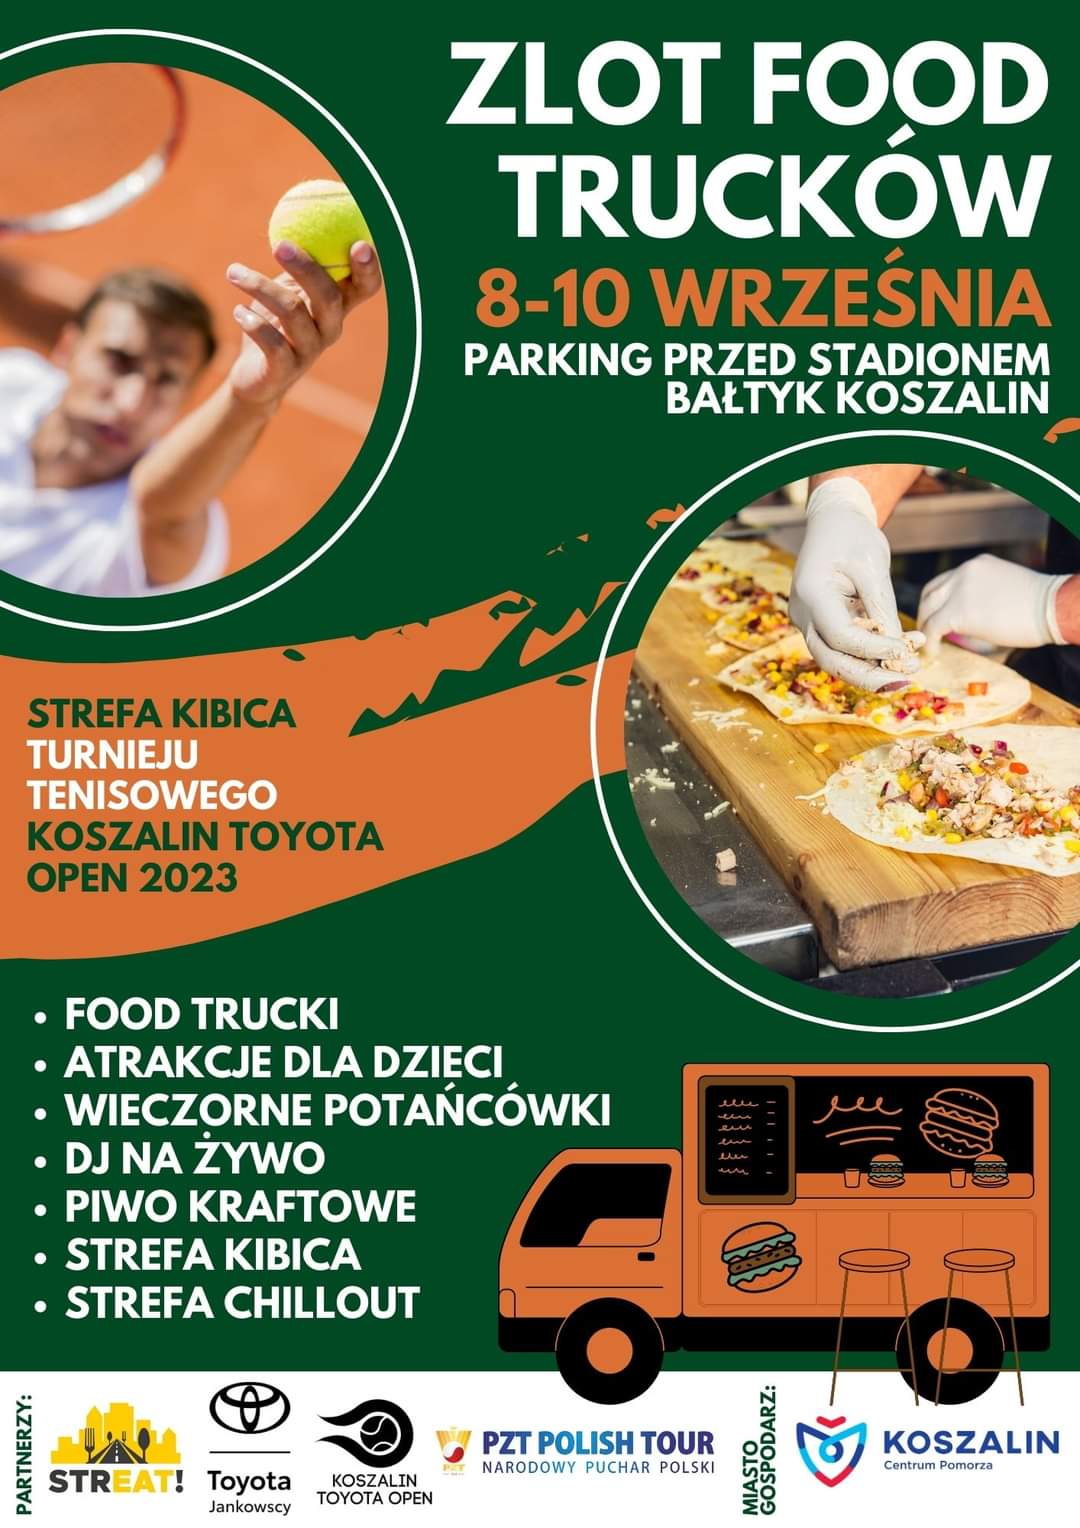 Plakat z zaproszeniem na zlot food trucków podczas wydarzenia turnieju tenisa odbywającego się w dniach 8 do 10 września 2023 stadion sportowy Bałtyk Koszalin